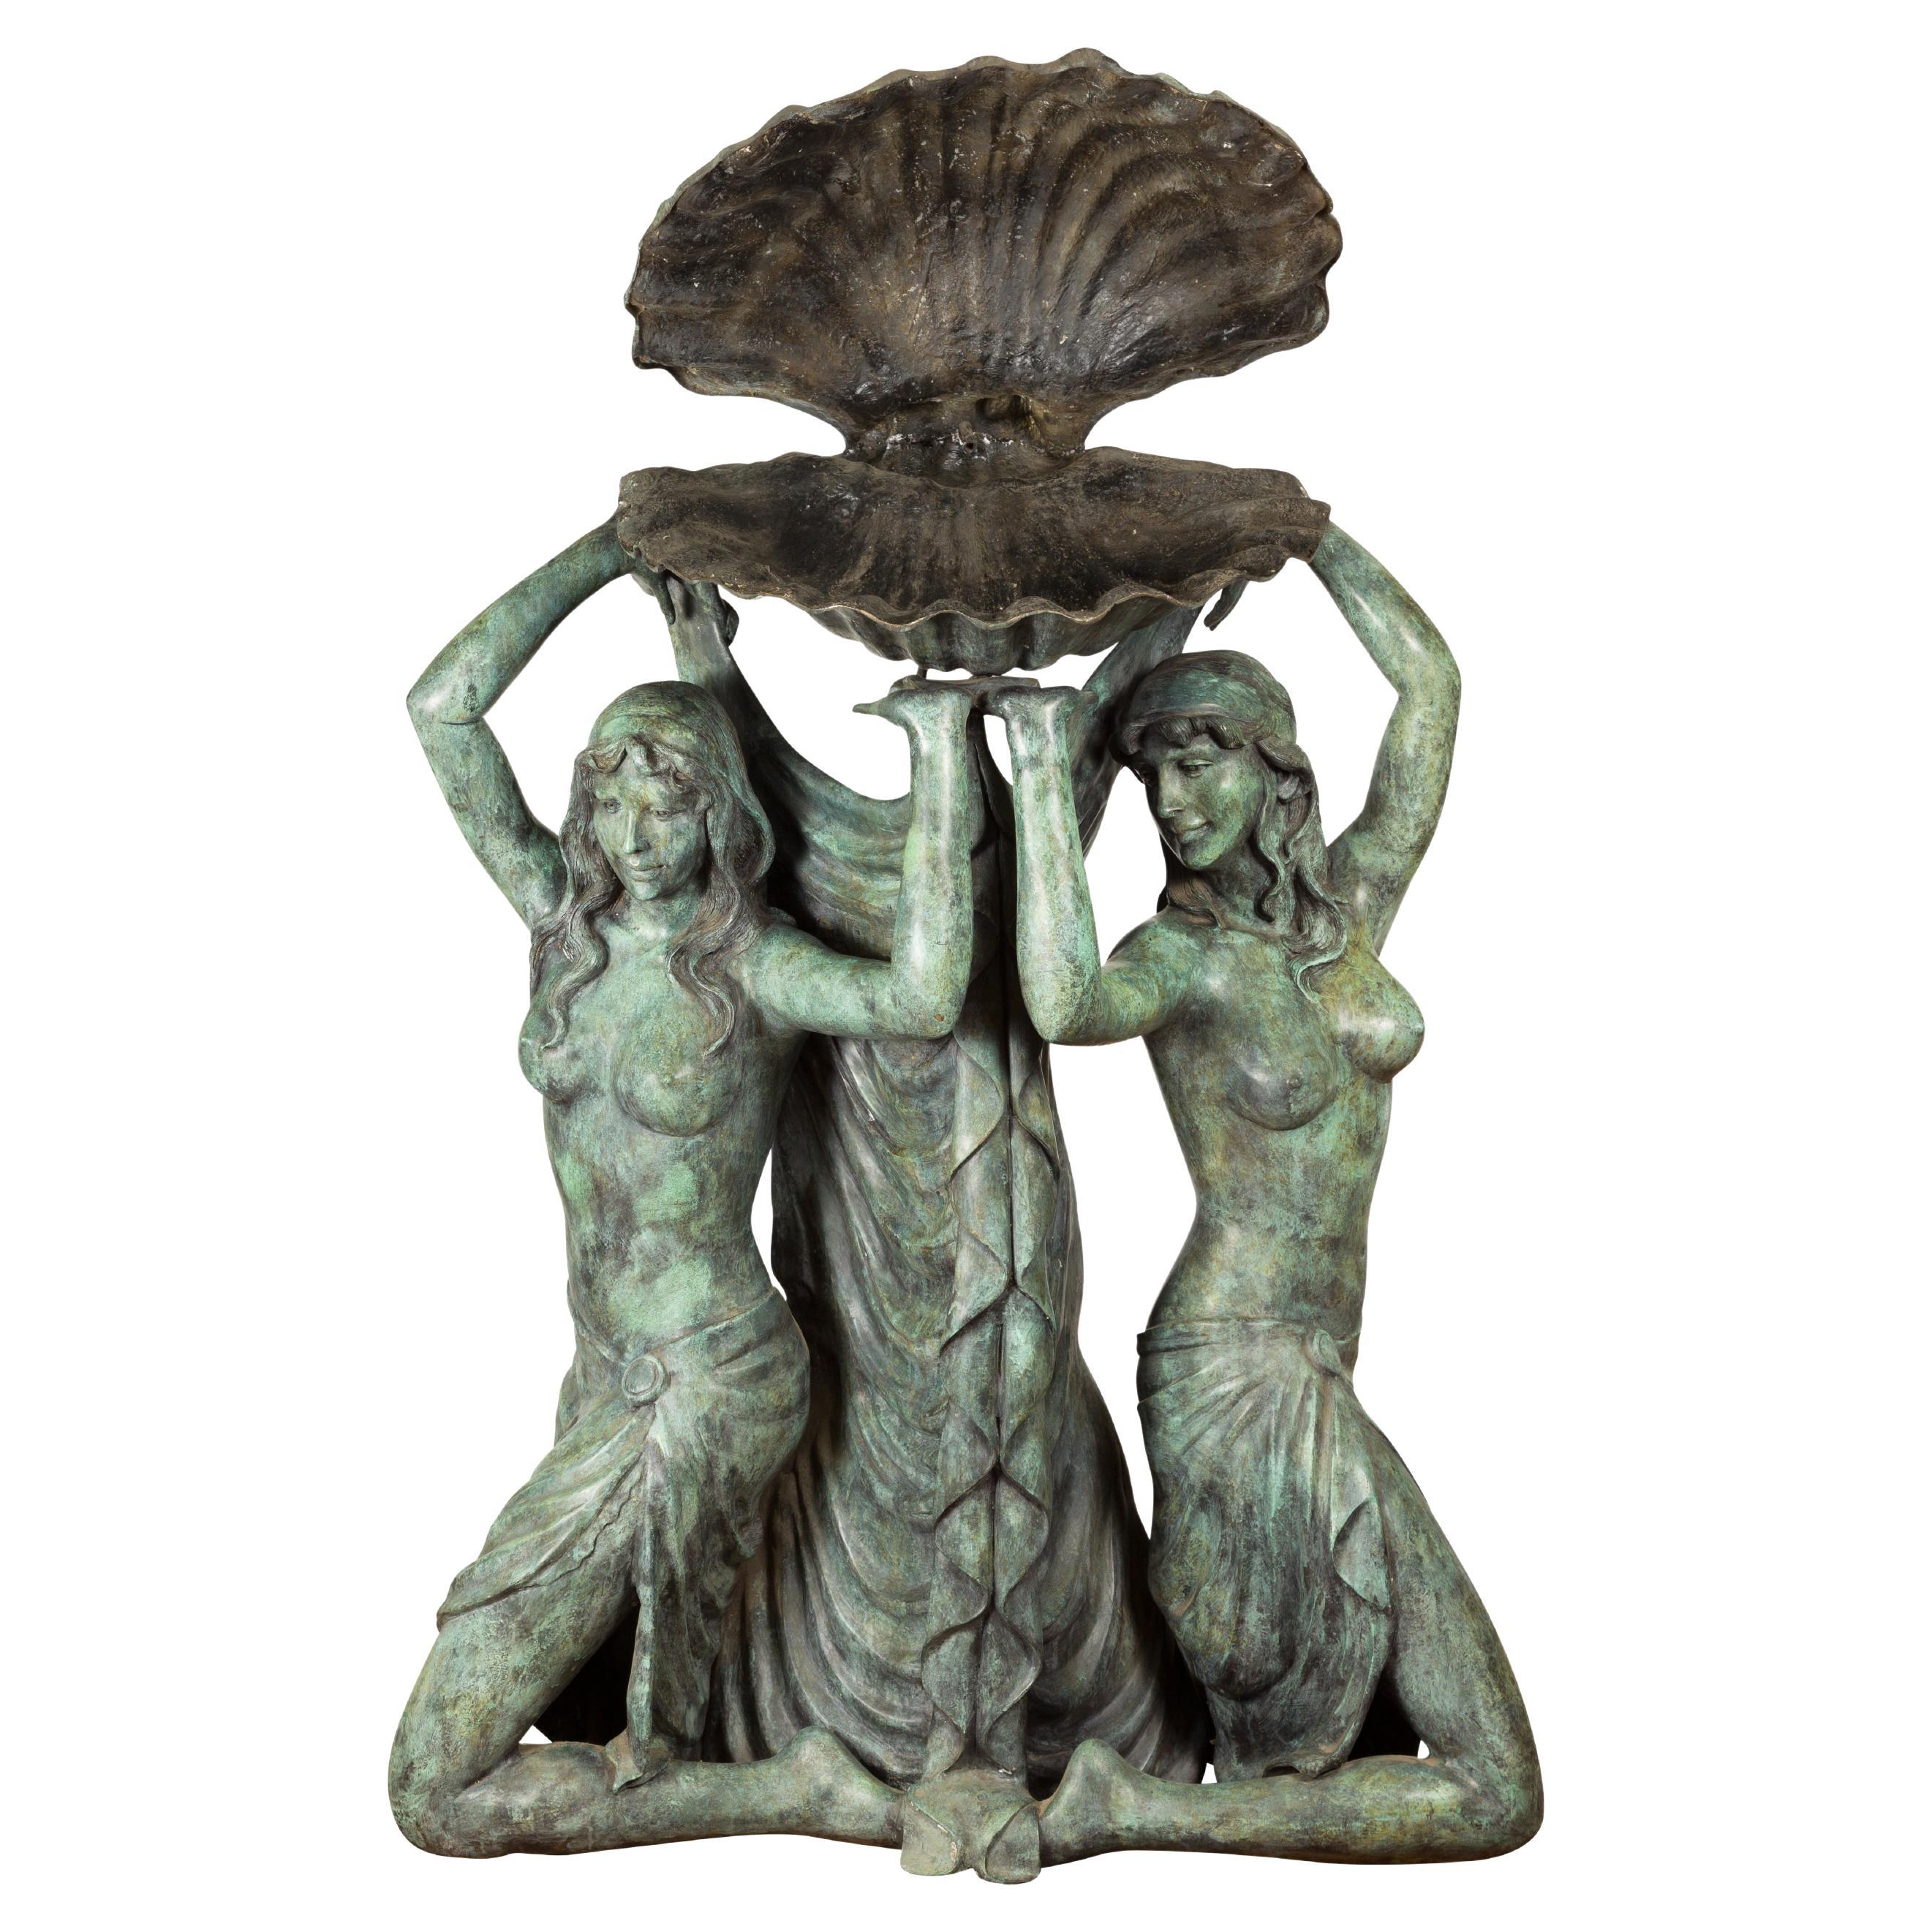 Griechisch-römisch inspirierter Bronzebrunnen mit drei Nymphen, die eine Muschel halten